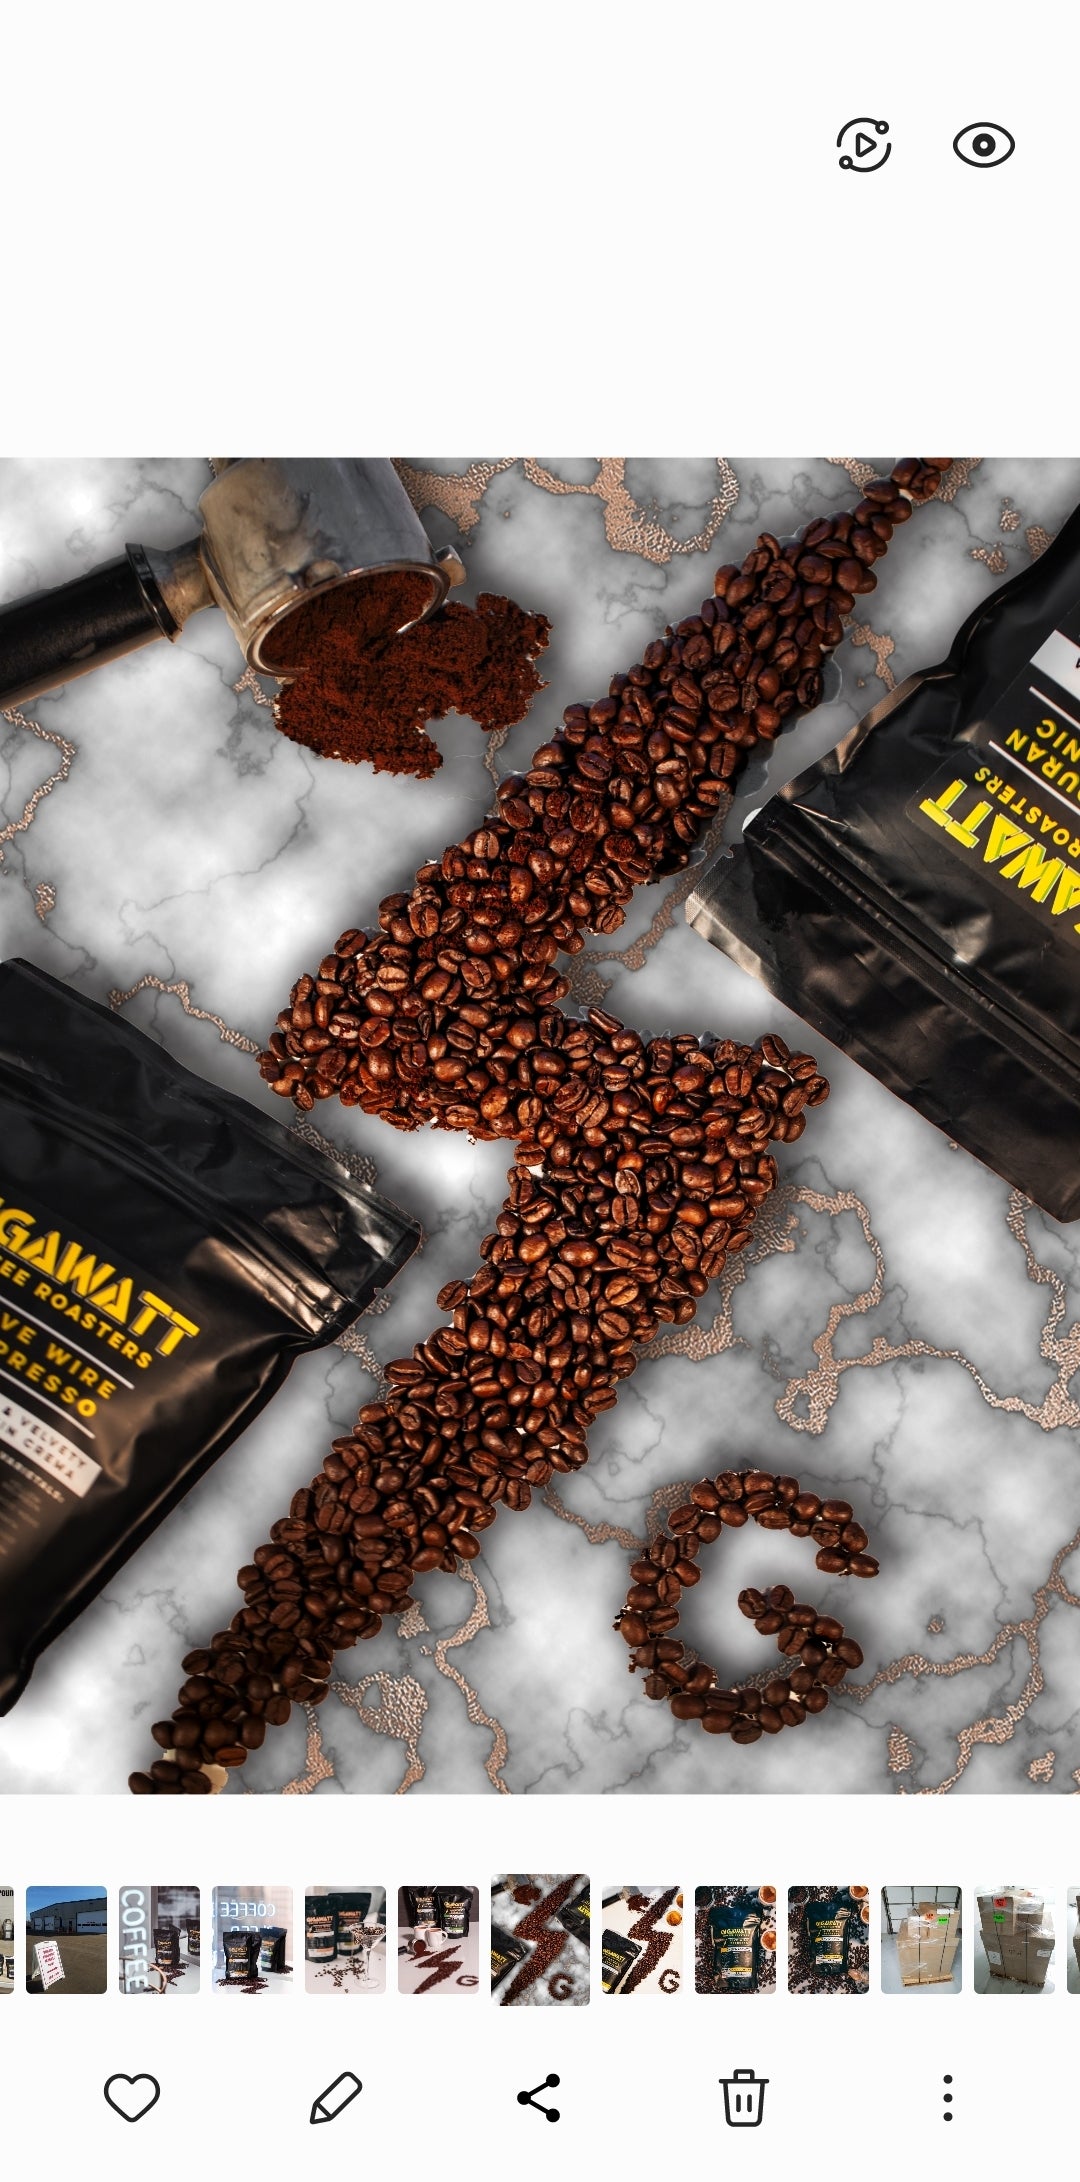 Gigawatt Artisanal Coffee Beans in shape of Lightning Bolt.